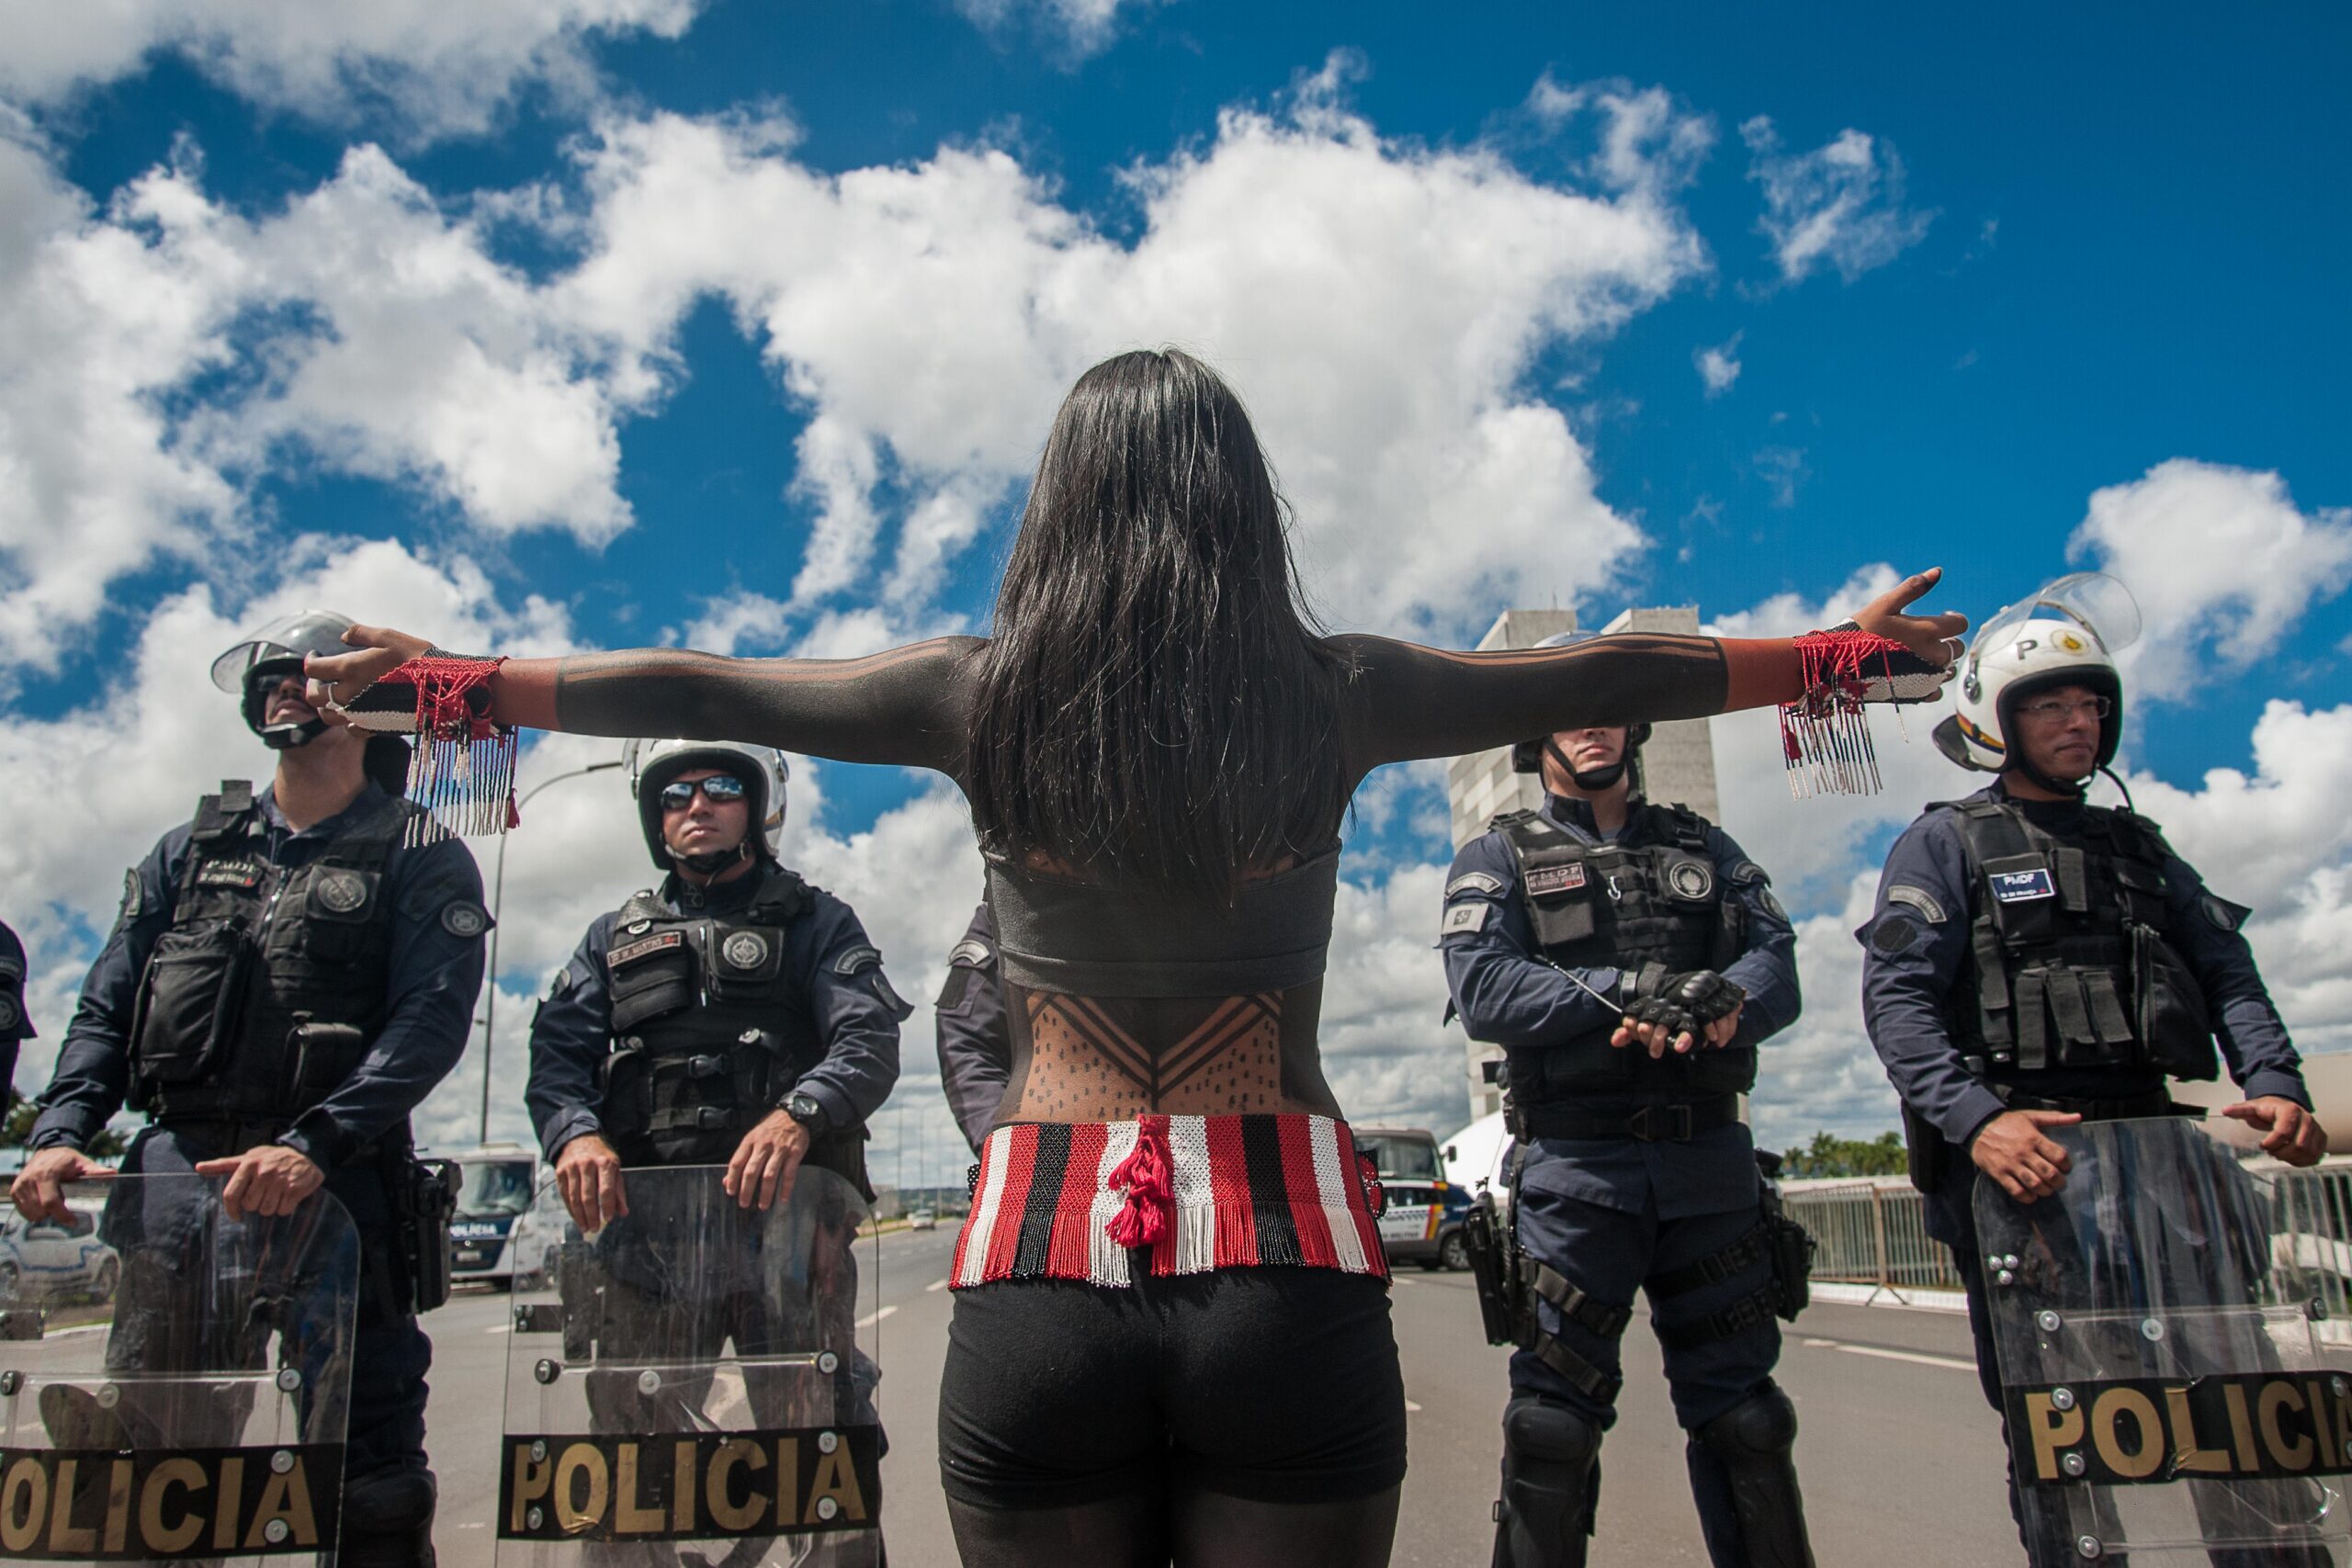 Poiciais militares de Brasília barram indígenas qeu participavam do Acampamento Terra Livre. A marcha seguia em direção ao Supremo Tribunal Federal, onde entregaram carta de reivindicações contra a tese do Marco Temporal.